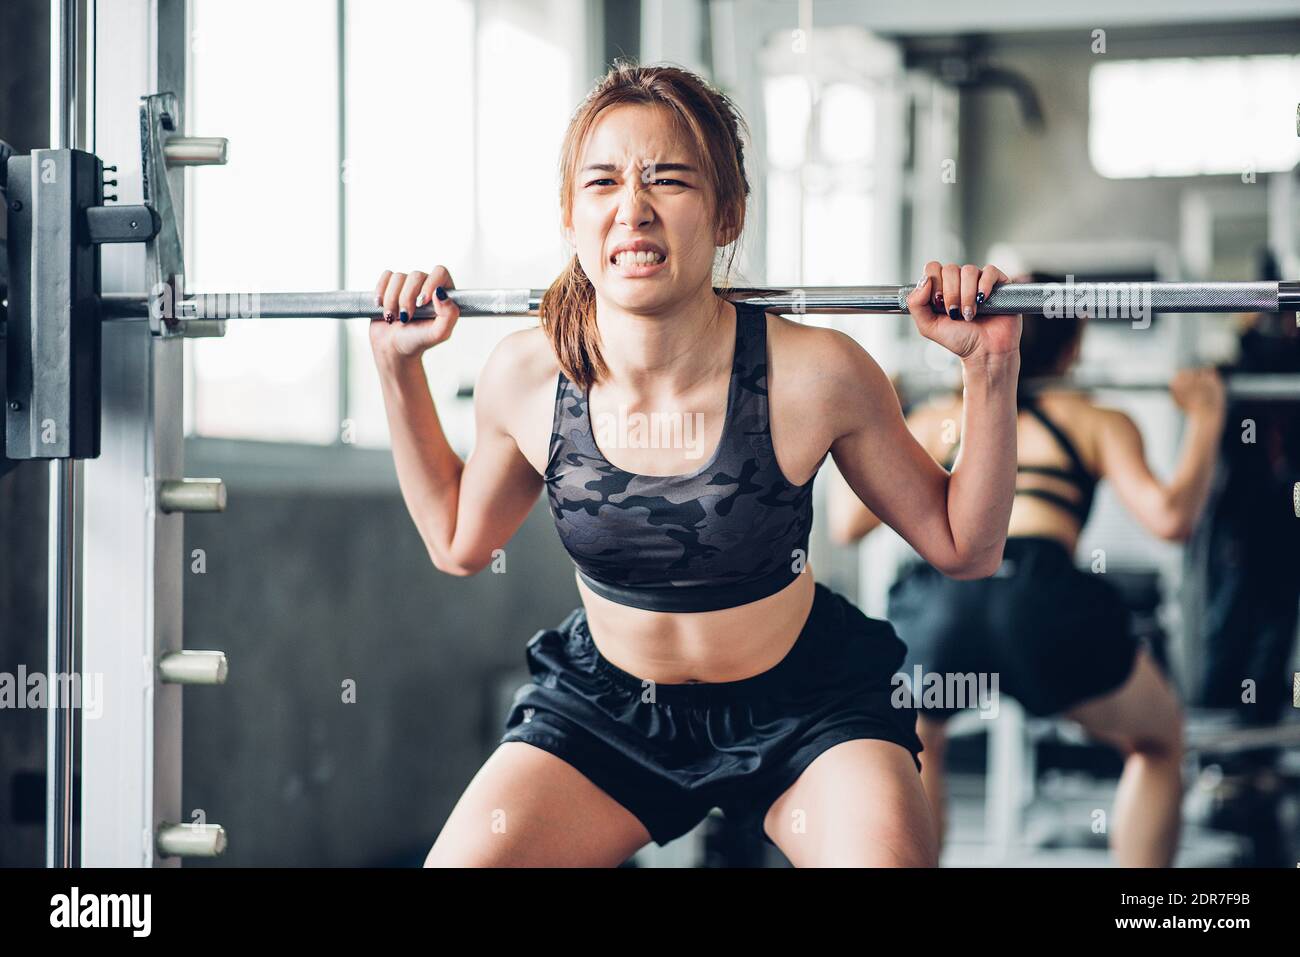 Junge Frau, Die Gewichte Hebt, Während Sie Im Fitnessstudio Steht  Stockfotografie - Alamy